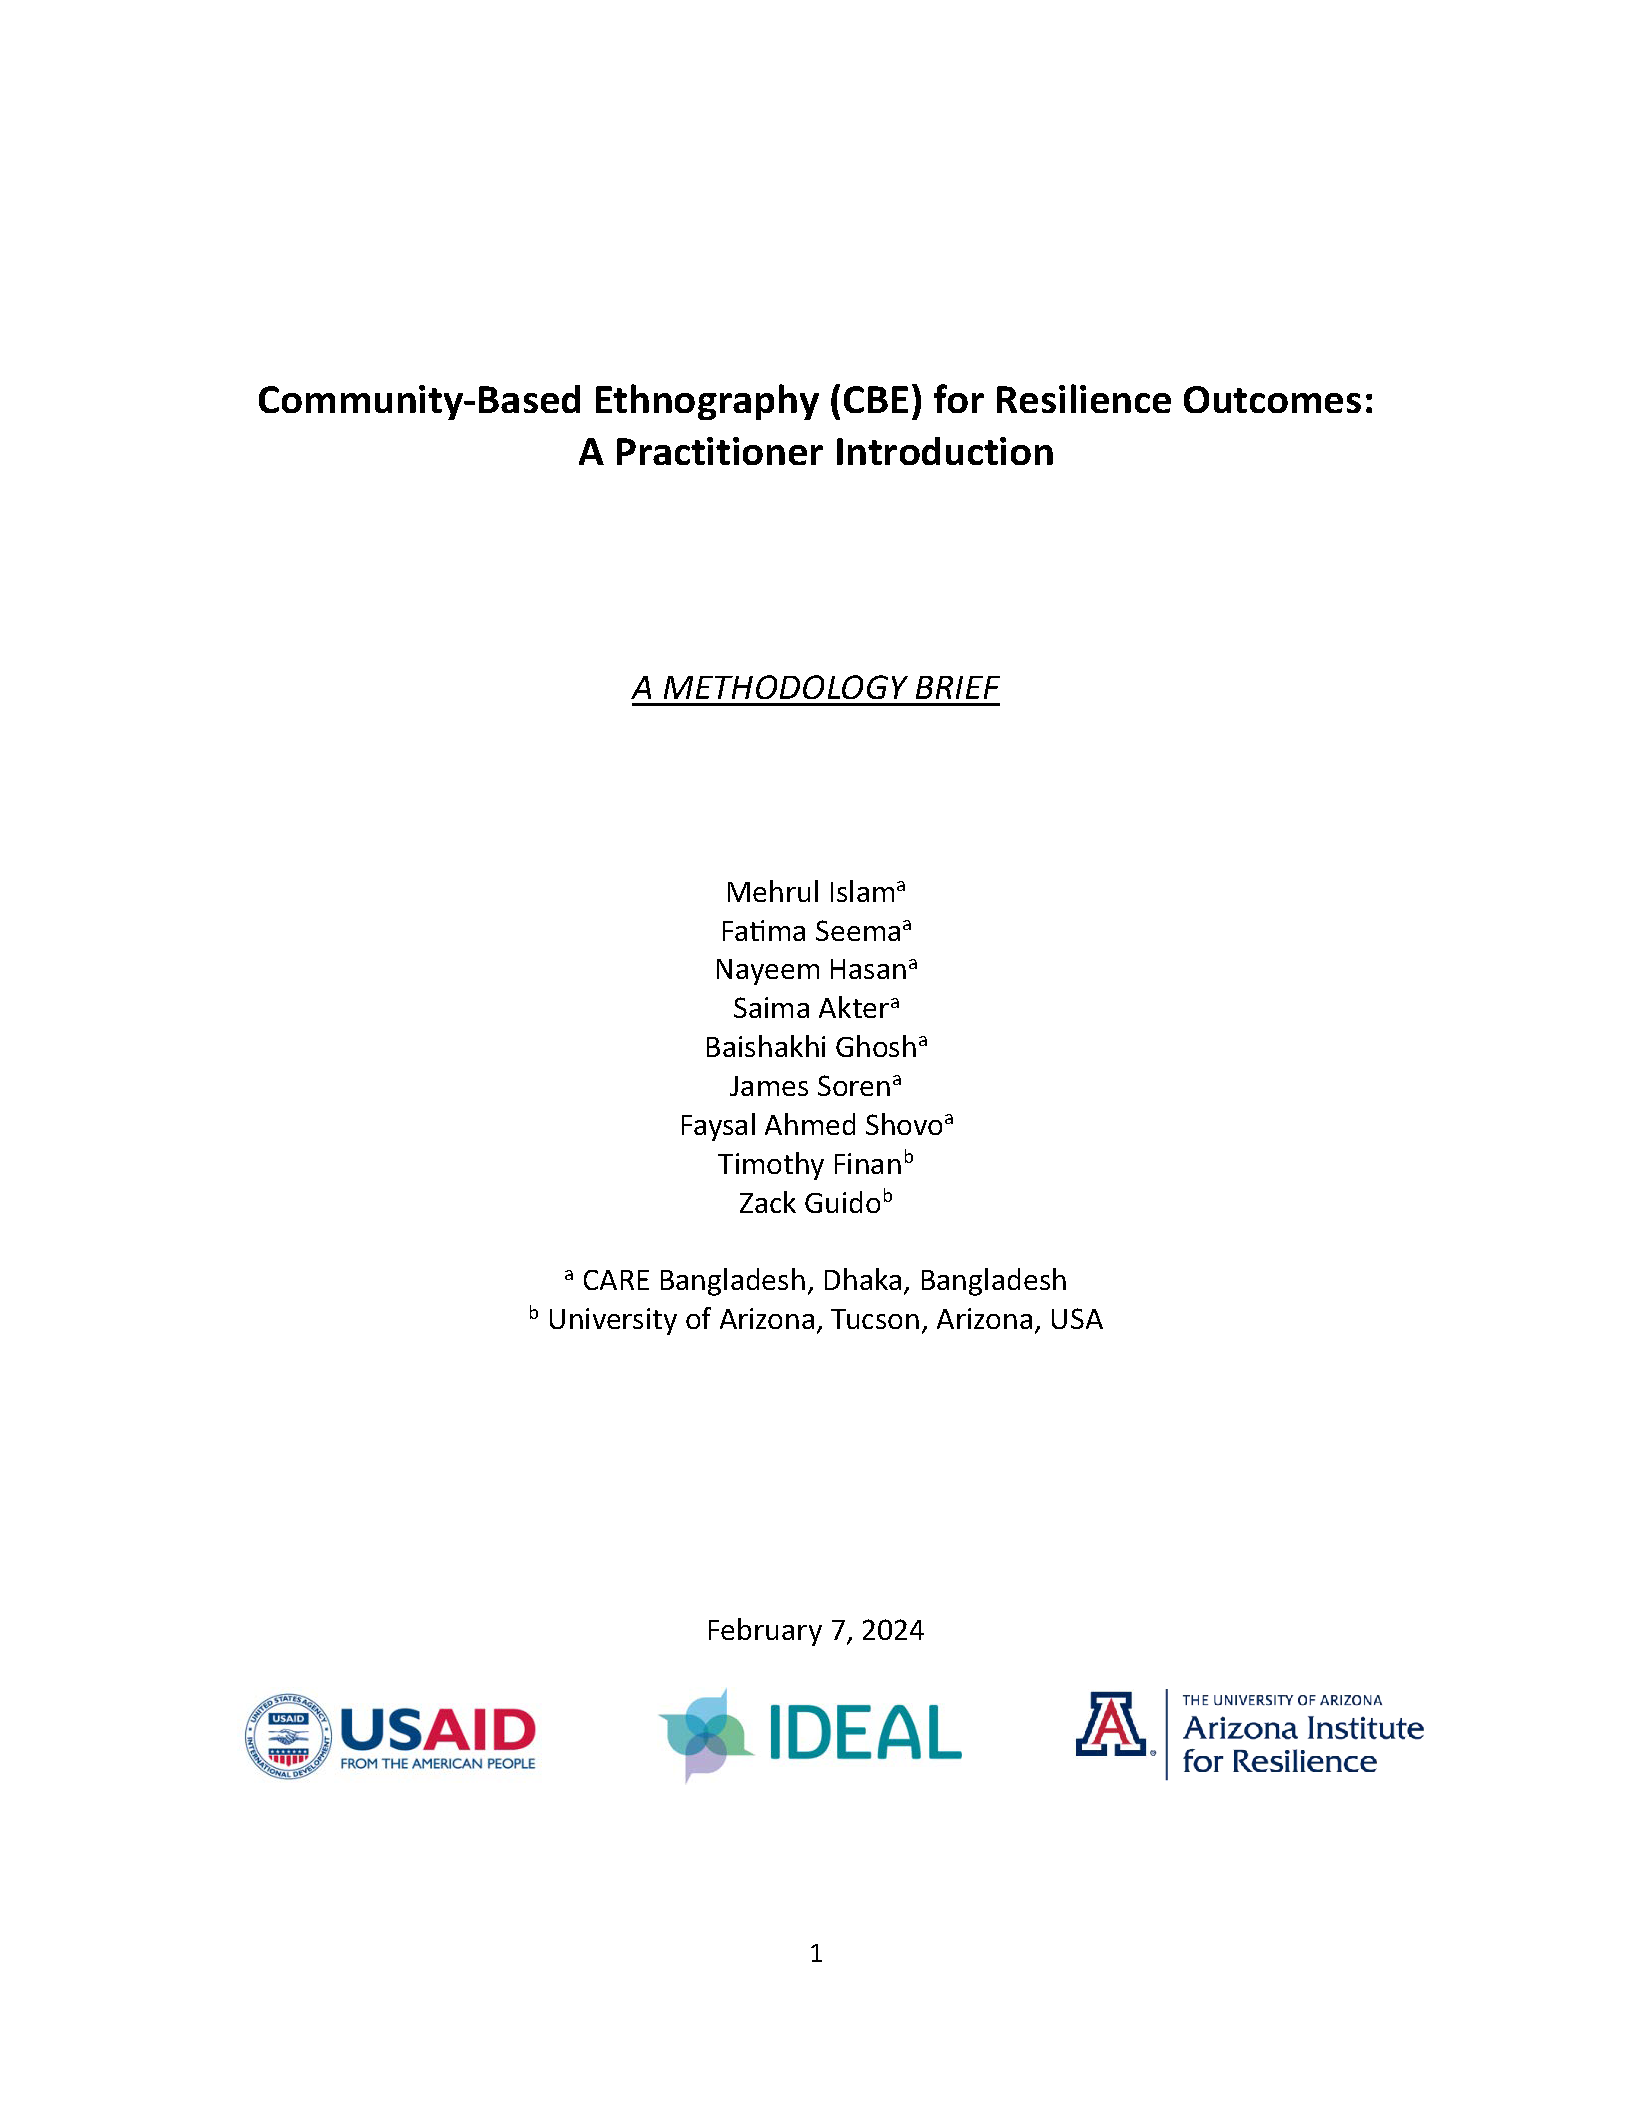 Page de couverture de l'Ethnographie communautaire (ECB) pour les résultats en matière de résilience : introduction d'un praticien